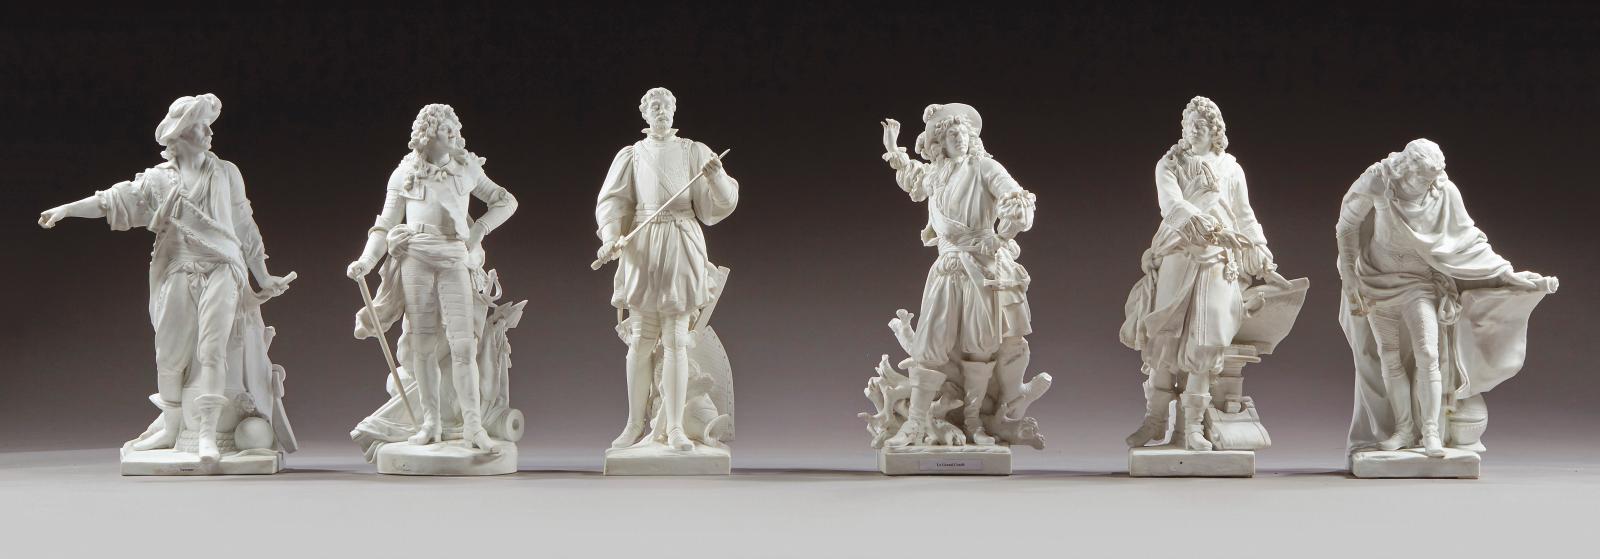 Manufacture de Sèvres, époques Empire pour cinq statuettes et Louis-Philippe pour l’une. Six figures des «Français illustres» en biscuit d